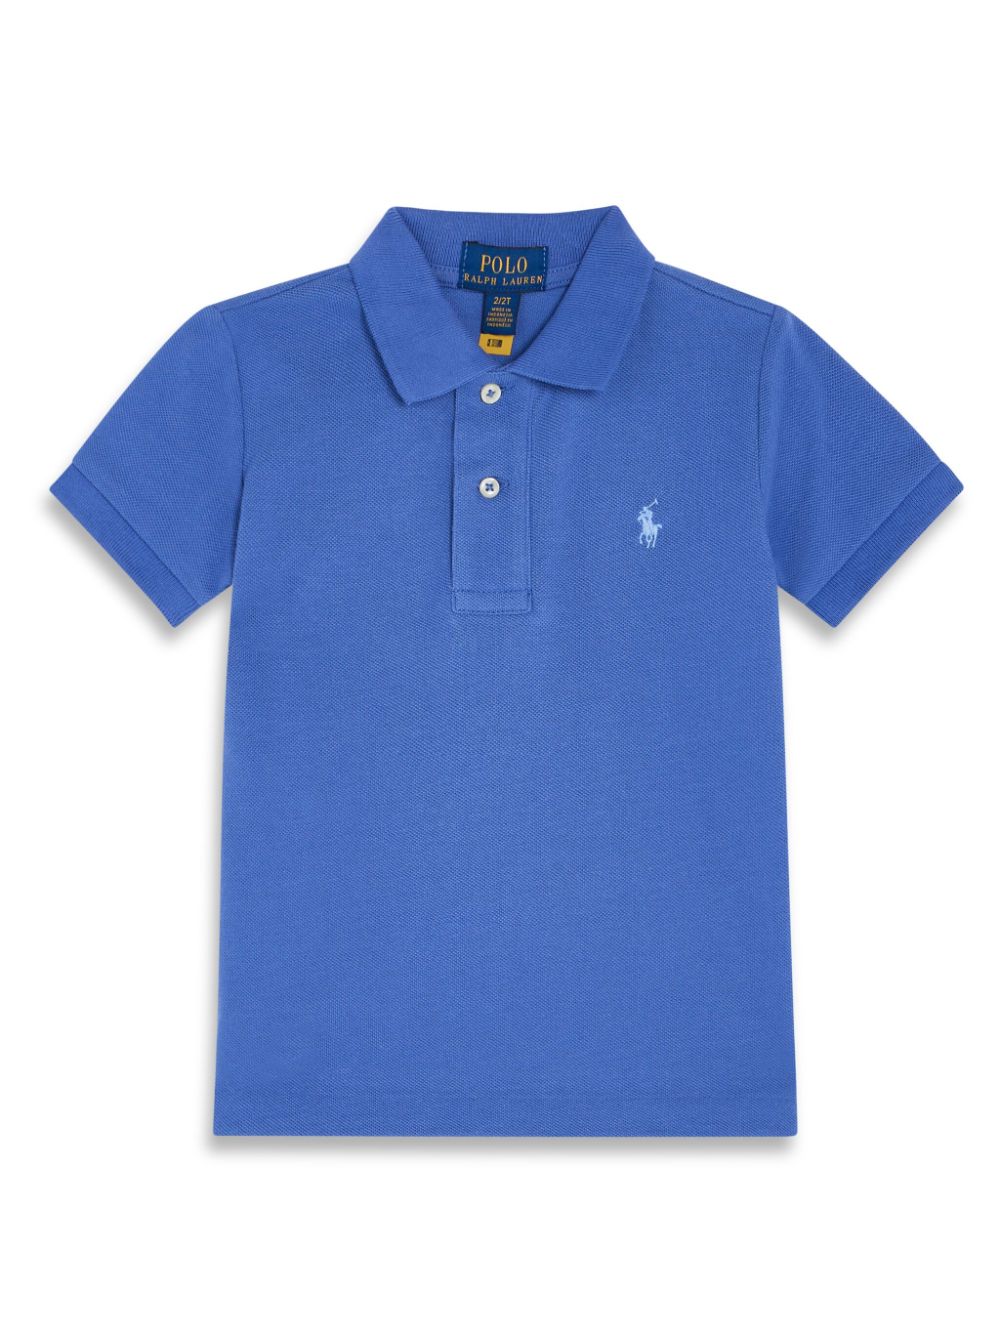 T-shirt bambino blu